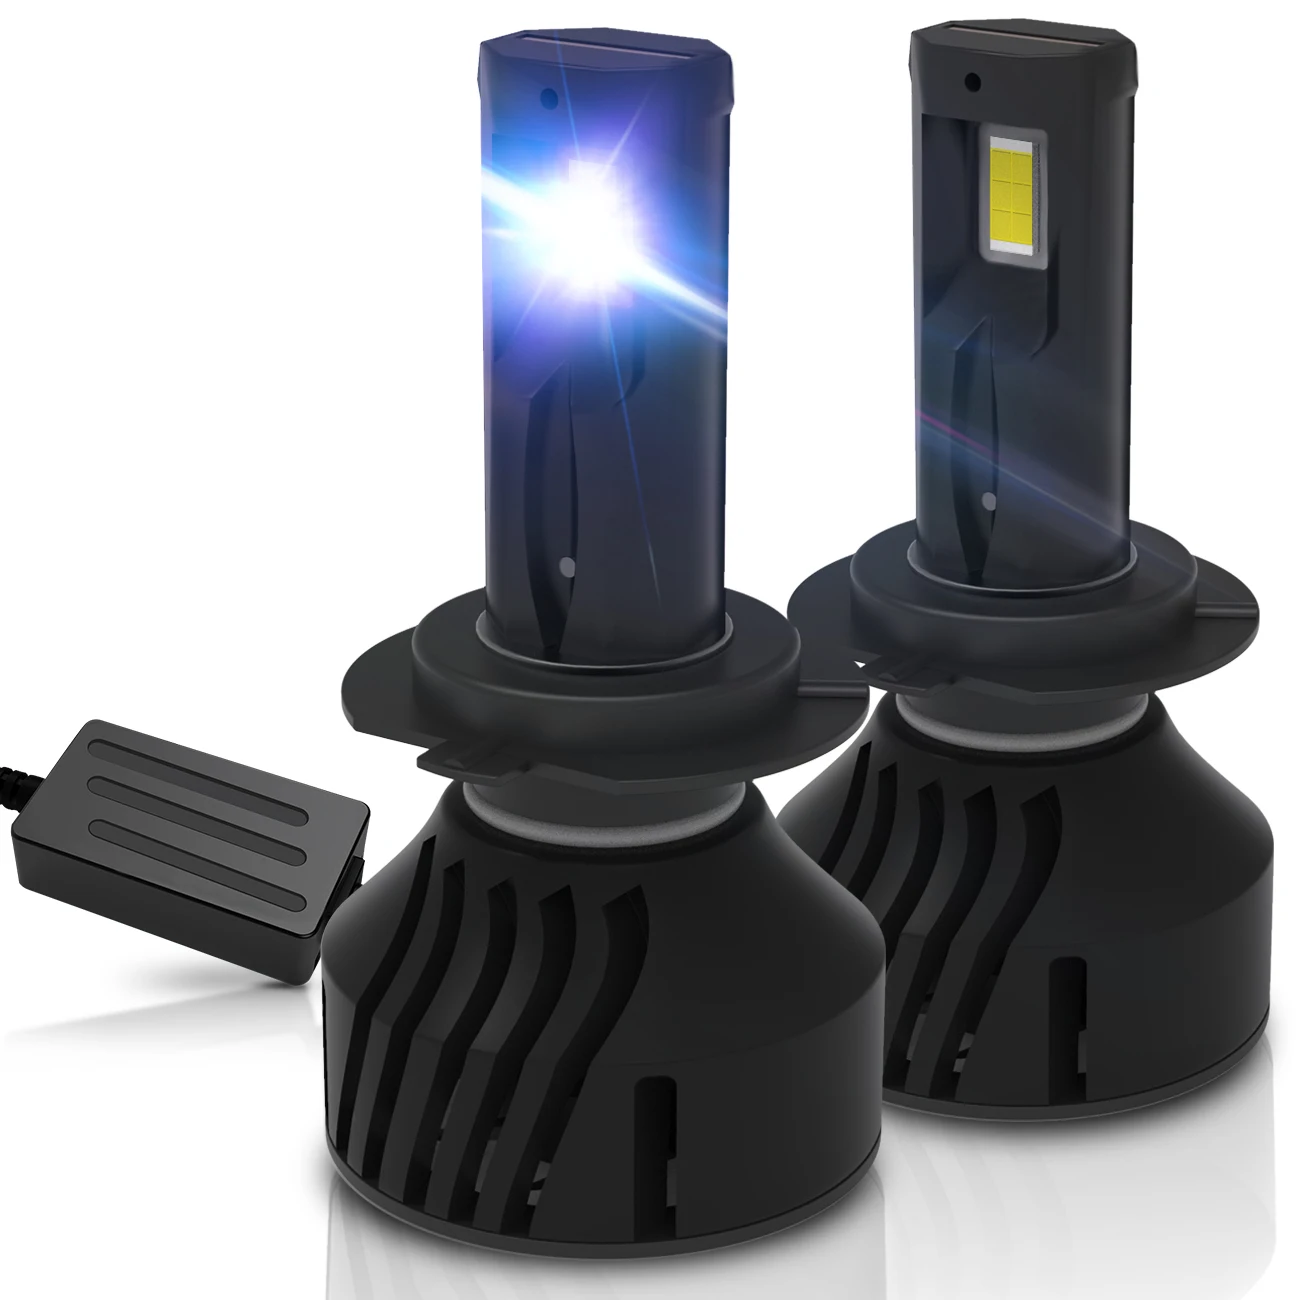 

A1 New LED Car Headlight H4 Hi/Lo Beam H7 H1 H3 H8 H9 H11 H13 9005 9006 9007 120W 30000lm 6500K Auto Headlamp Fog Light Bulbs